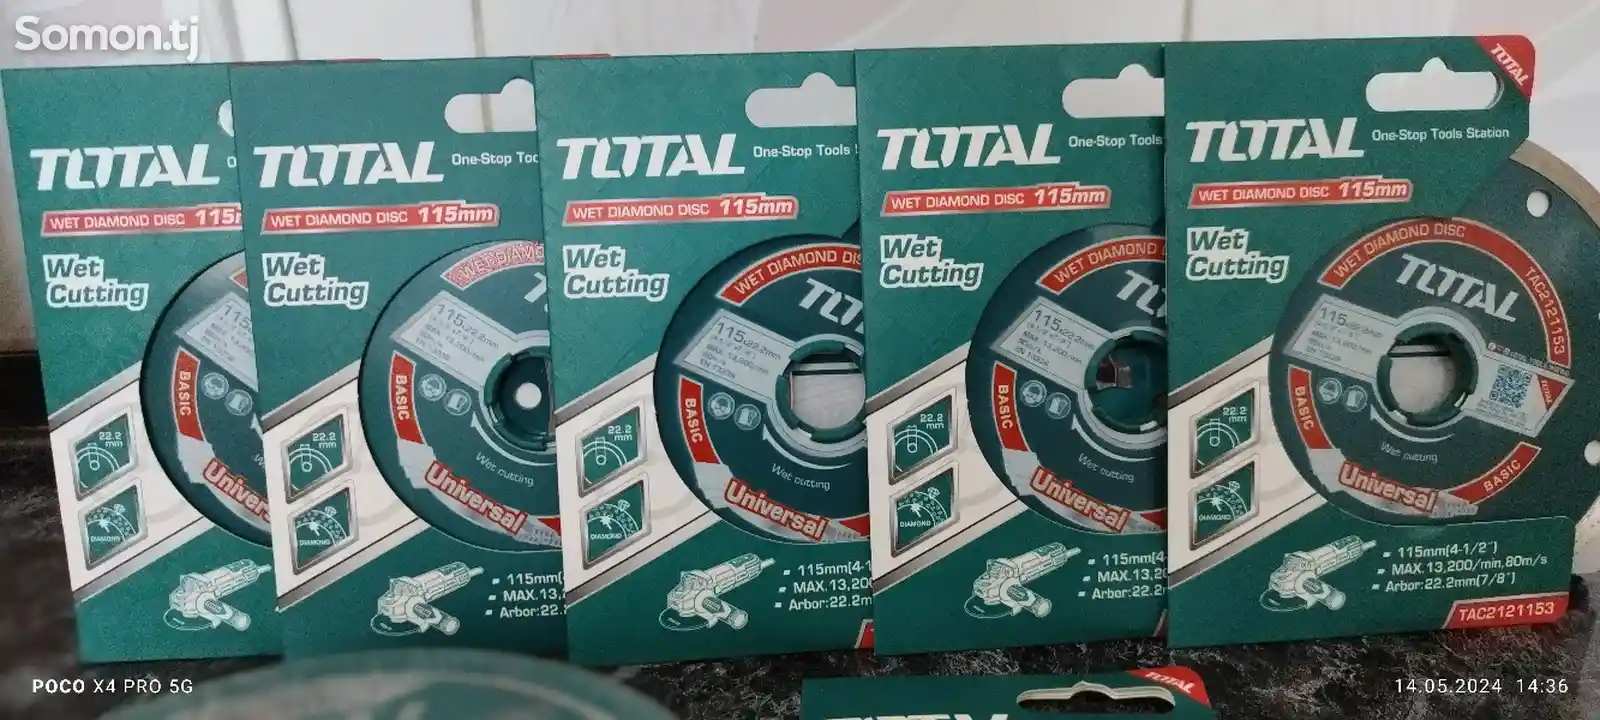 Металлический диск Total-8